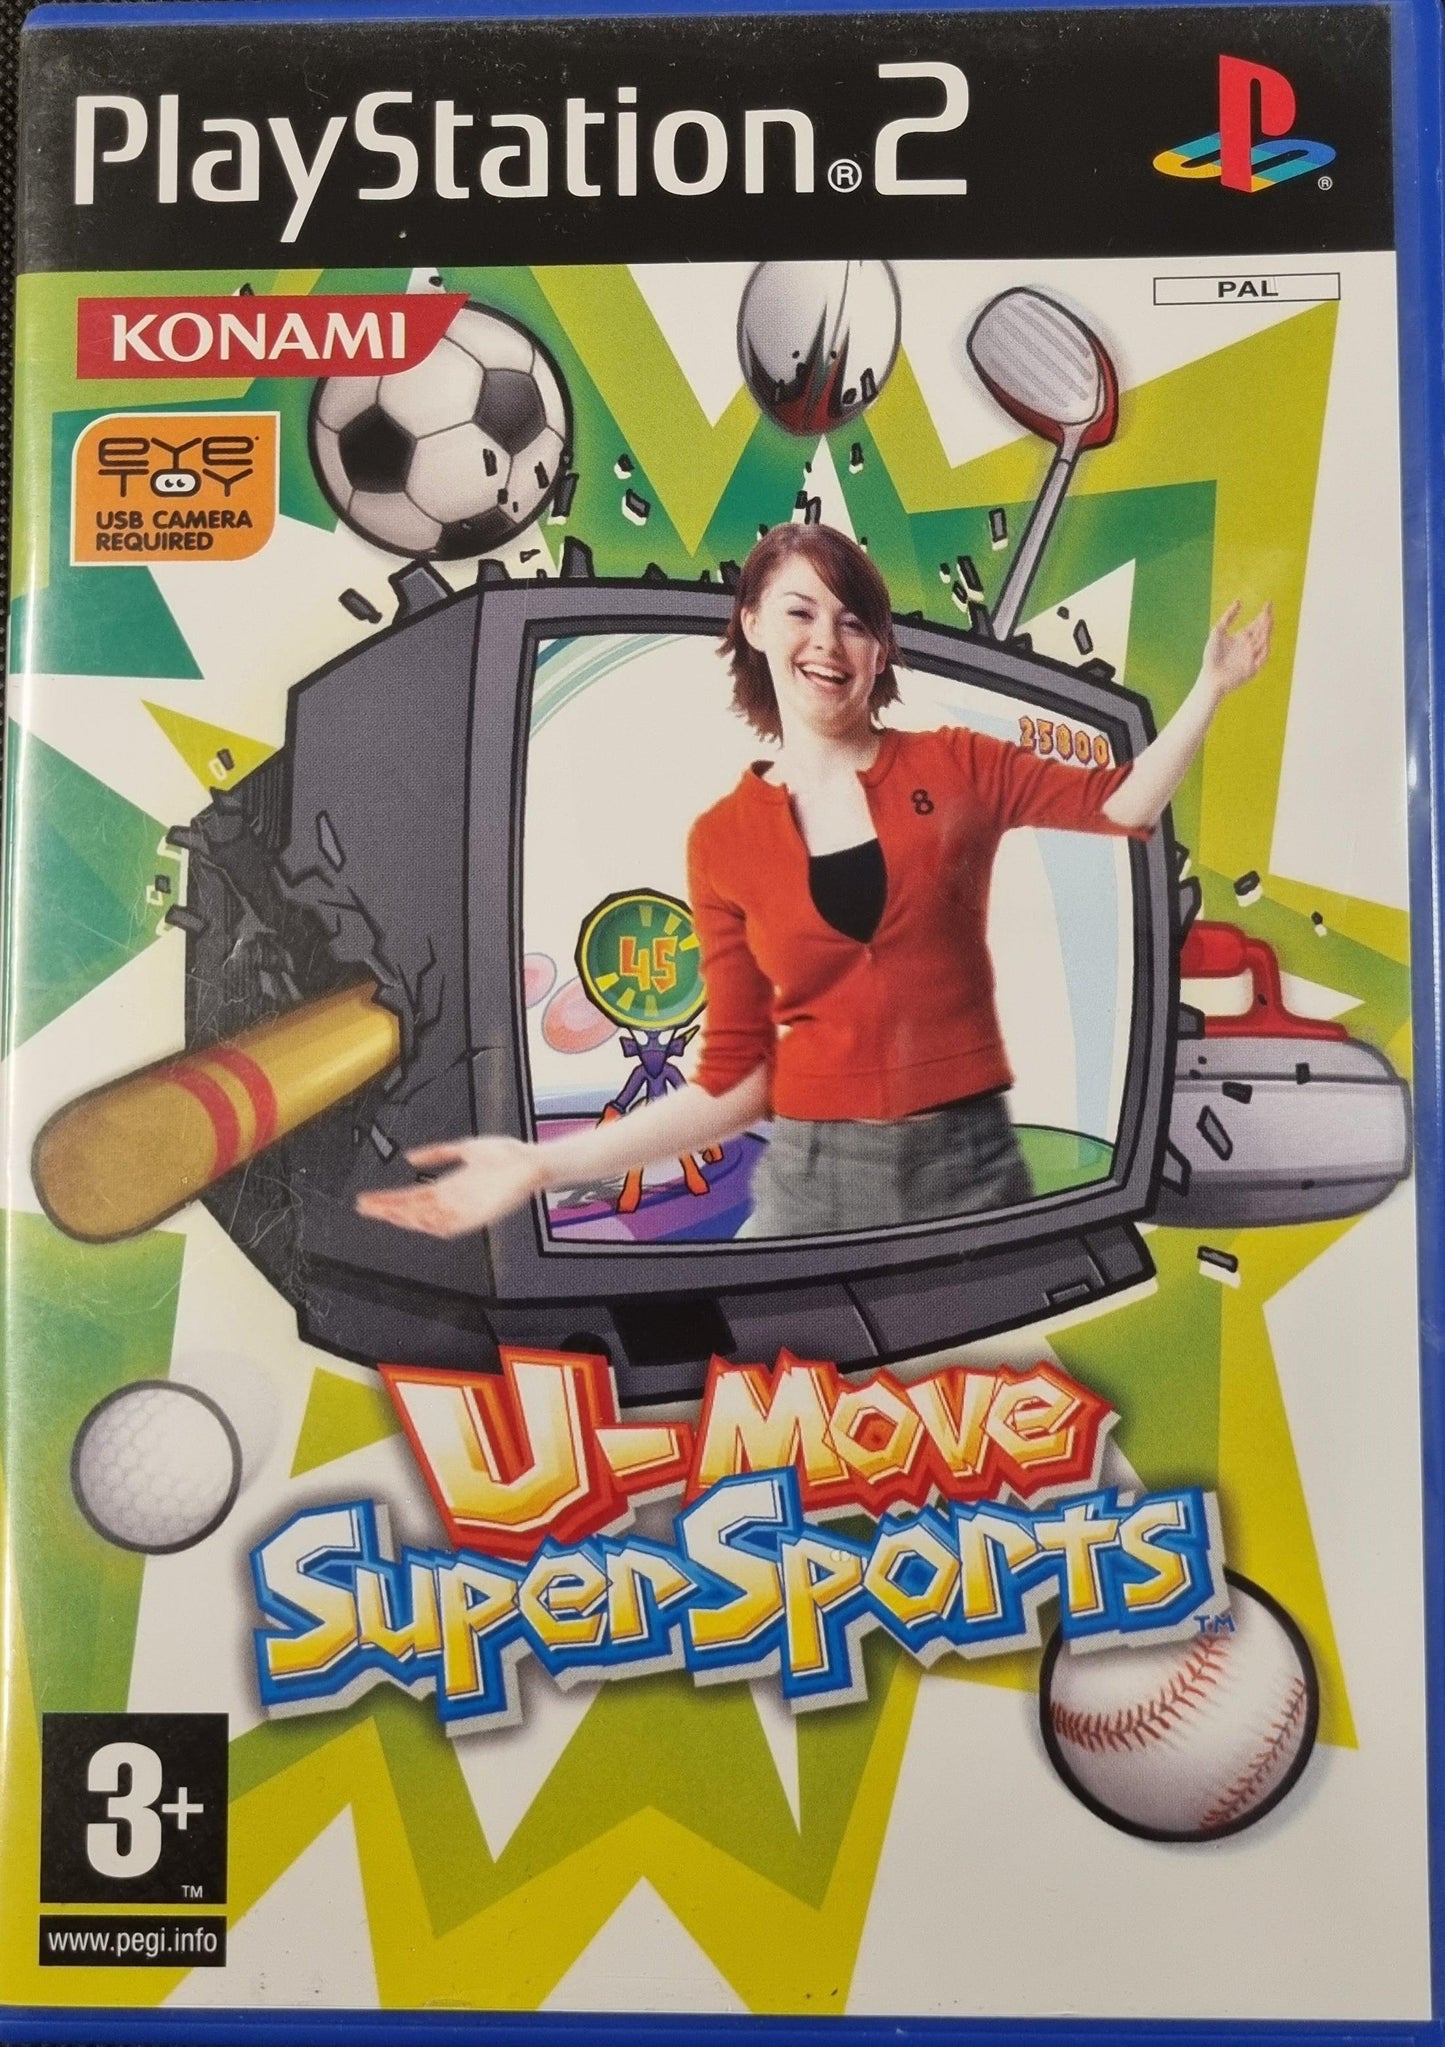 U-Move Super Sports - ZZGames.dk